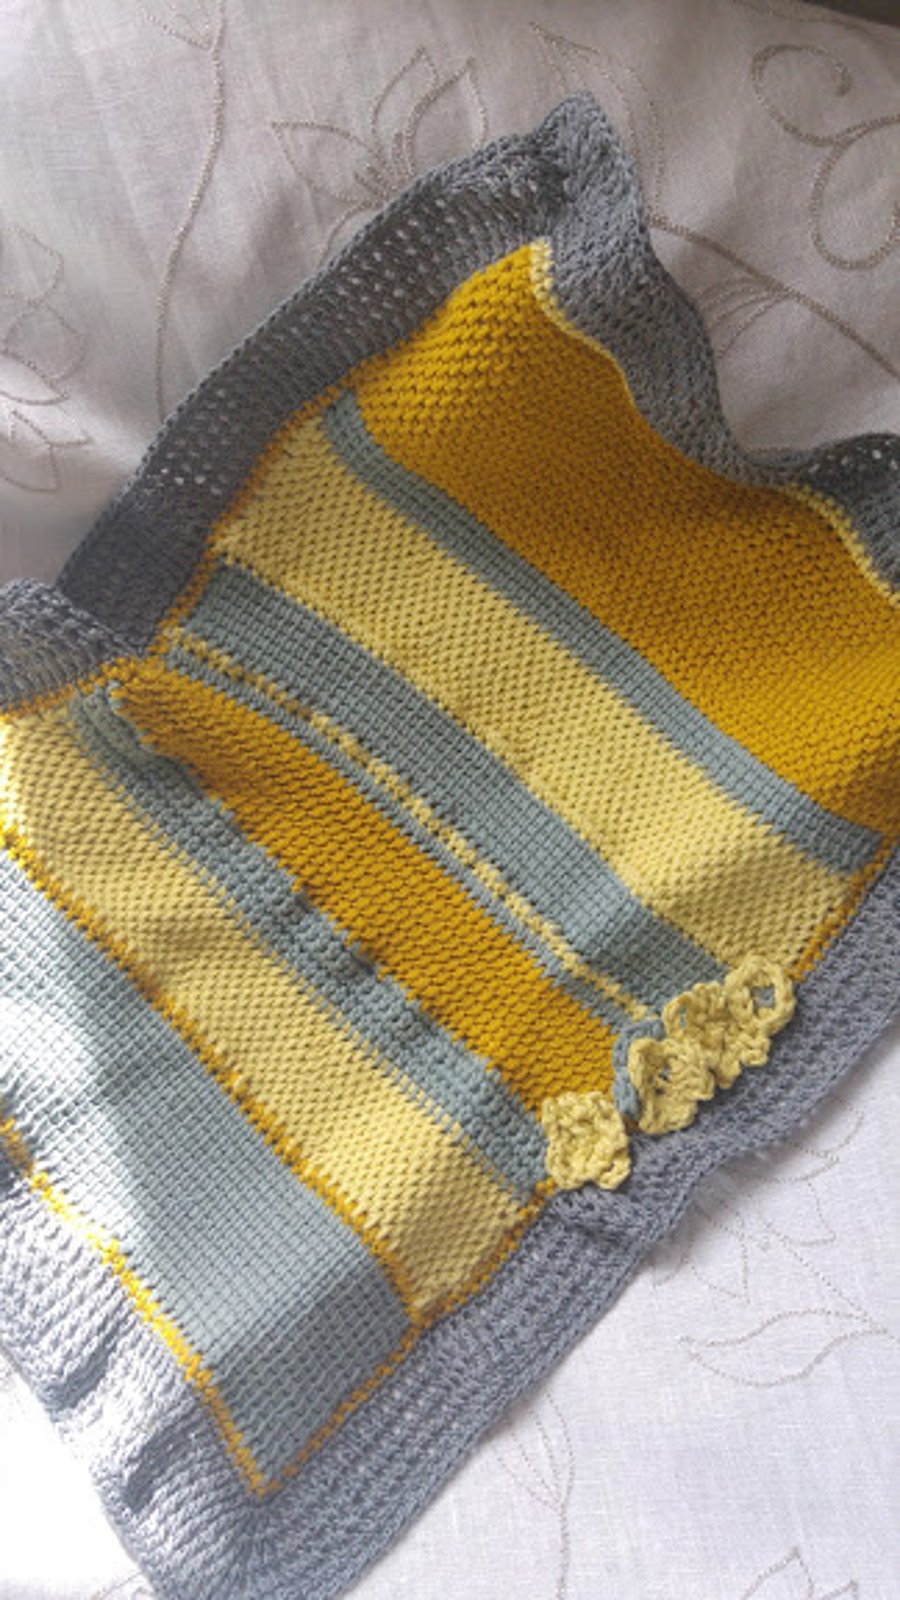 Raggedy Cotton Tunisian Knit Crochet Sampler Pram Blanket 